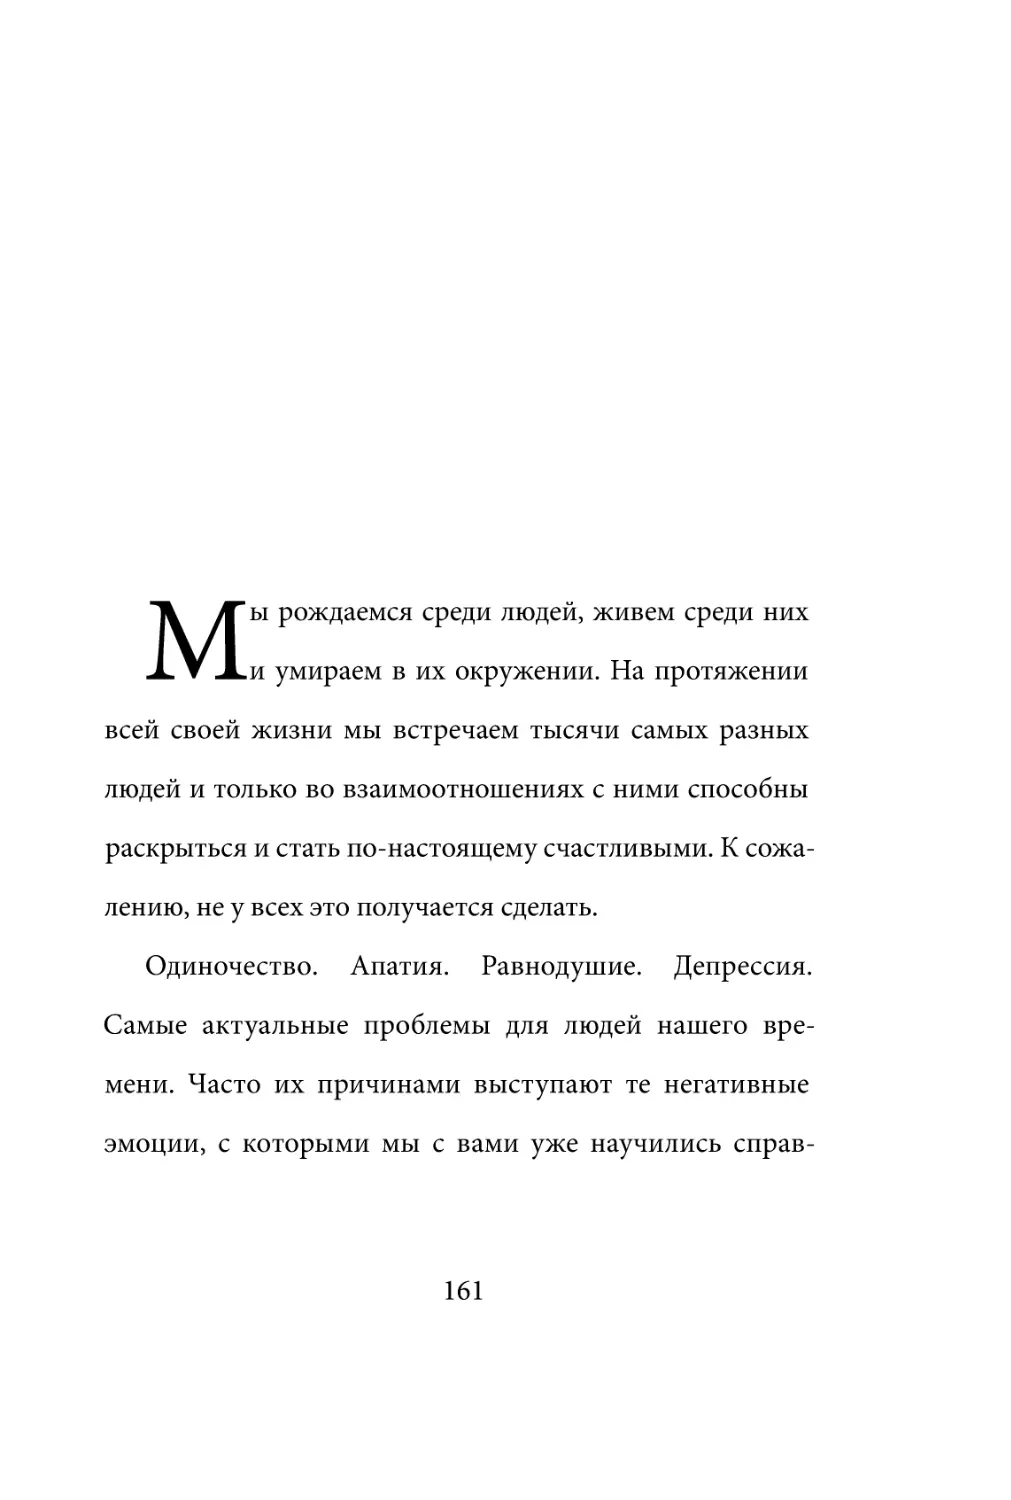 Sergey_Filippov_Dnevnik_samorazvitia_Evolyutsia_Vnutrennego_Sostoyania_161.pdf (p.161)